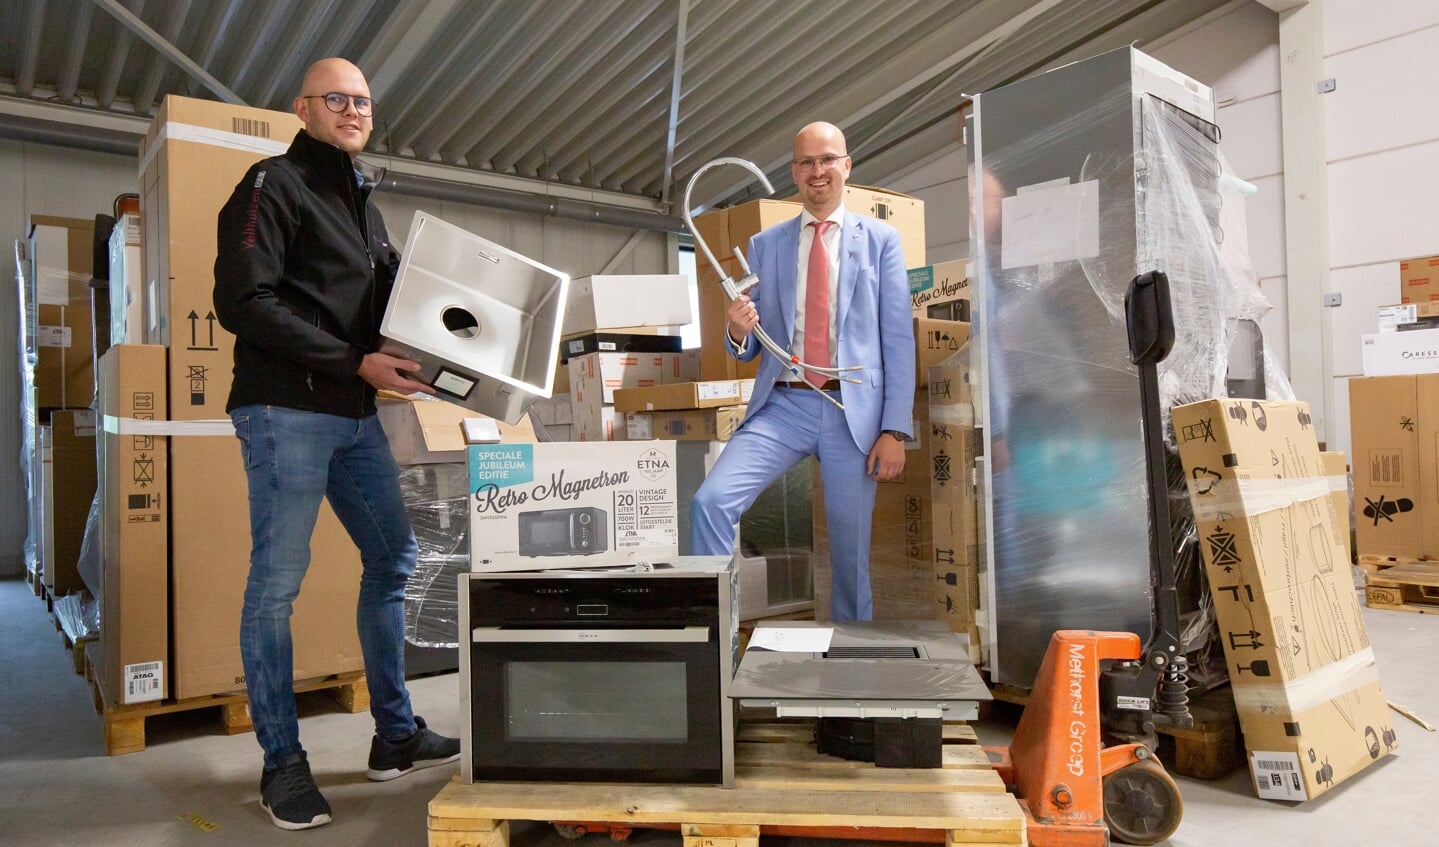 Eigenaar Johan van Velthuizen en keukendesigner Wilbrand Hardeman poseren tussen de onderdelen en apparaten.